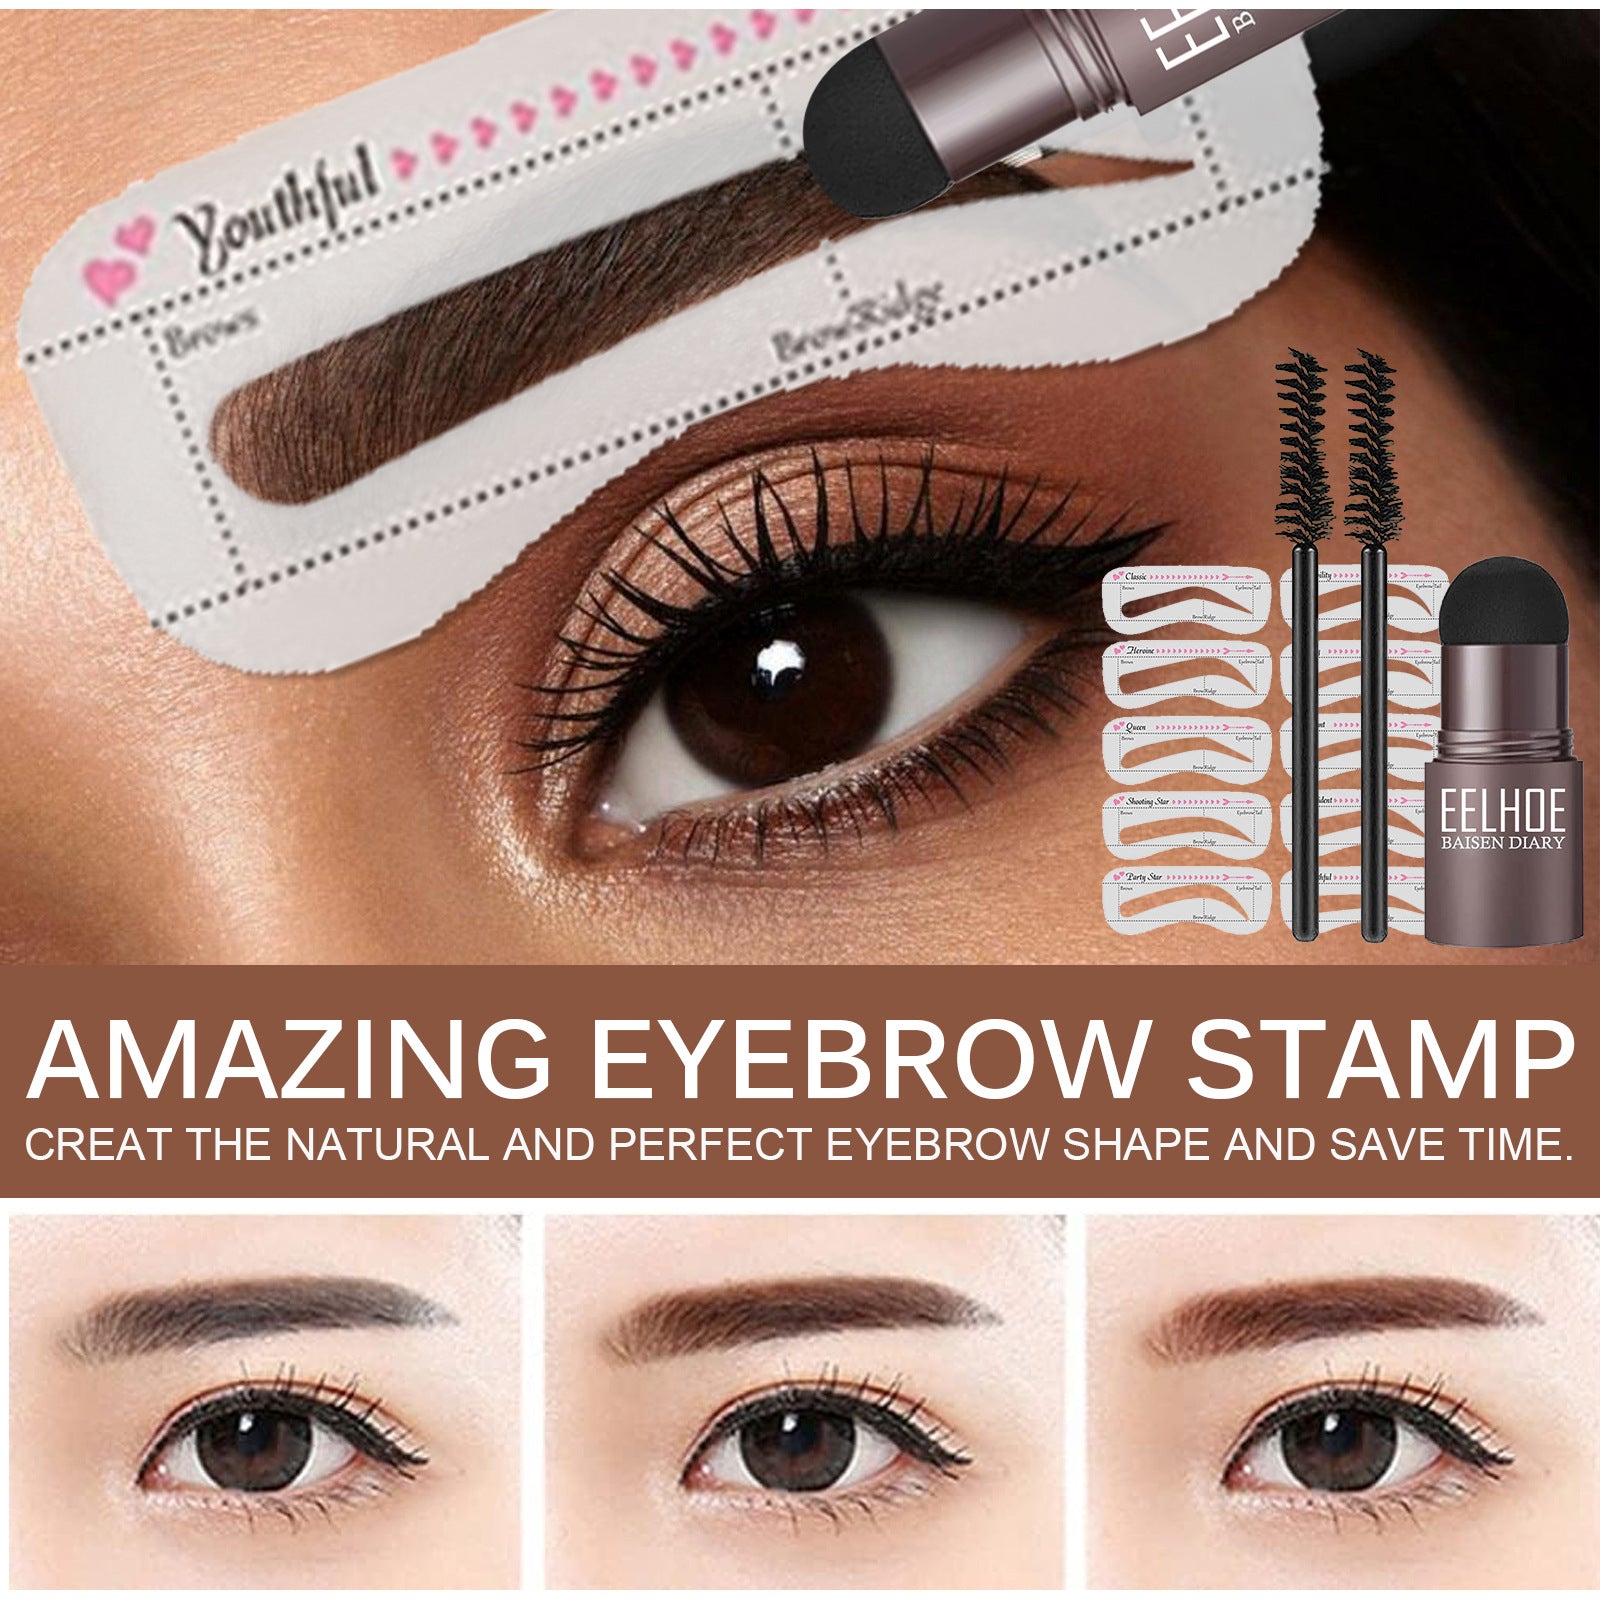 EELHOE Eyebrow Stamp Set Makeup Eyebrow Powder